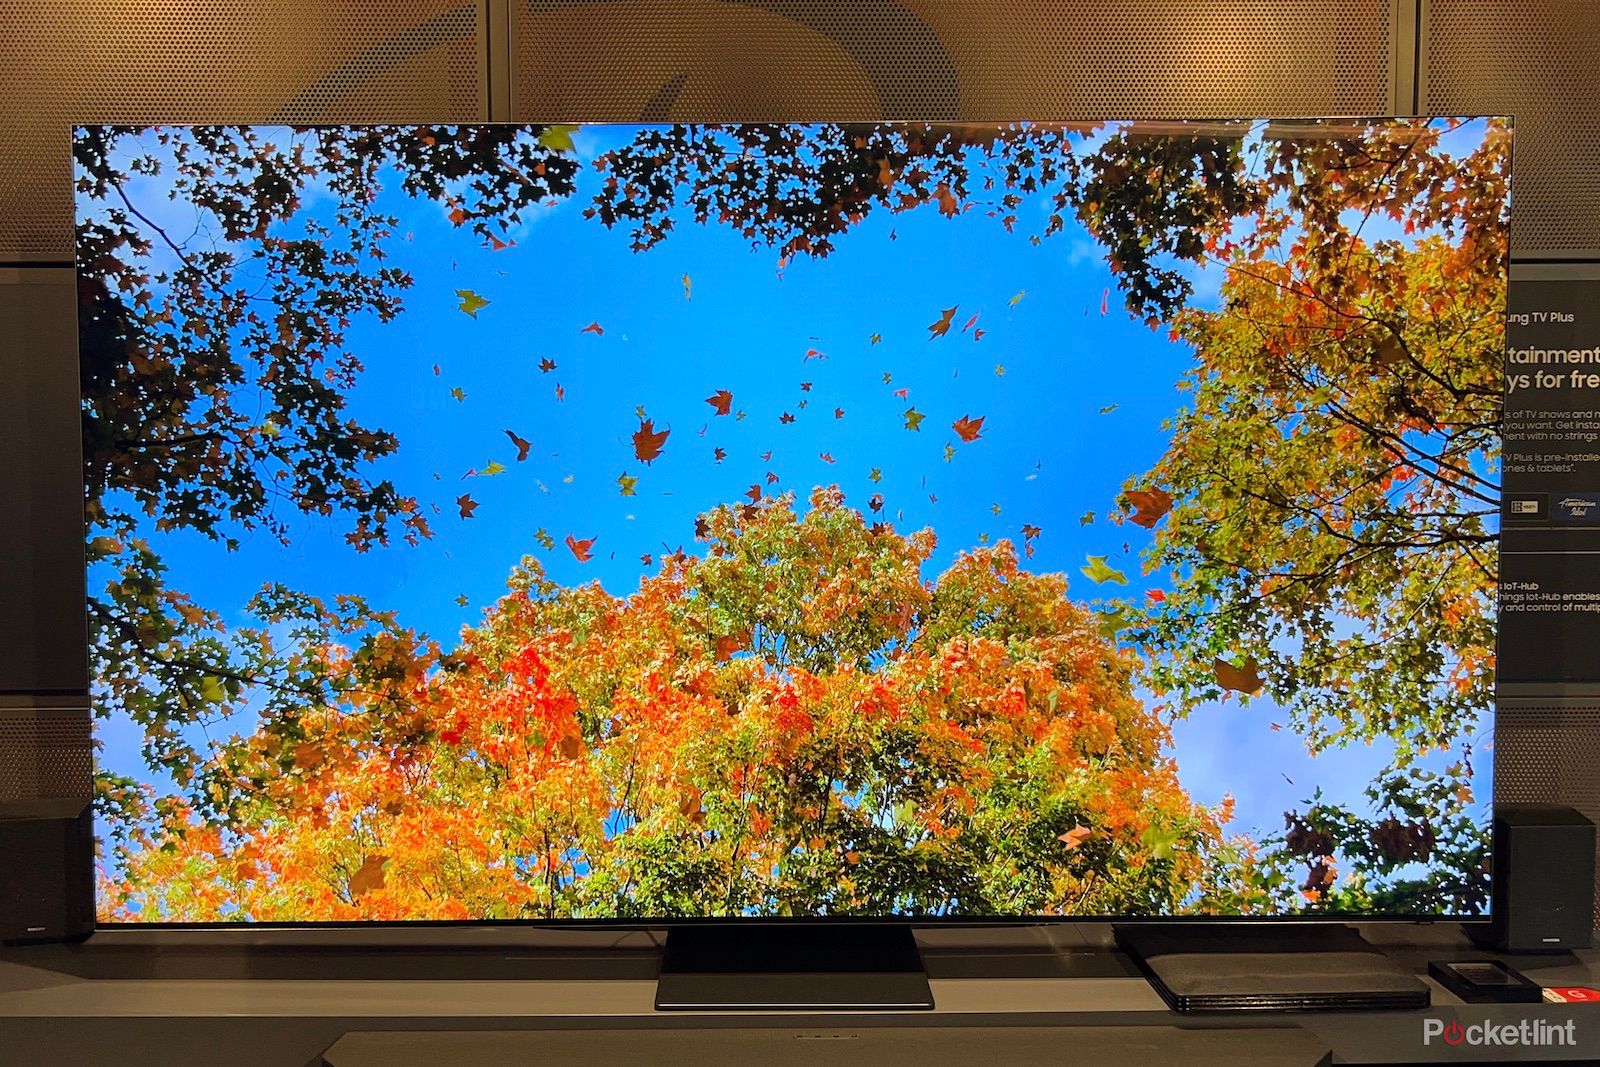 La gama de televisores Samsung QLED 8K llegará en tamaños de hasta